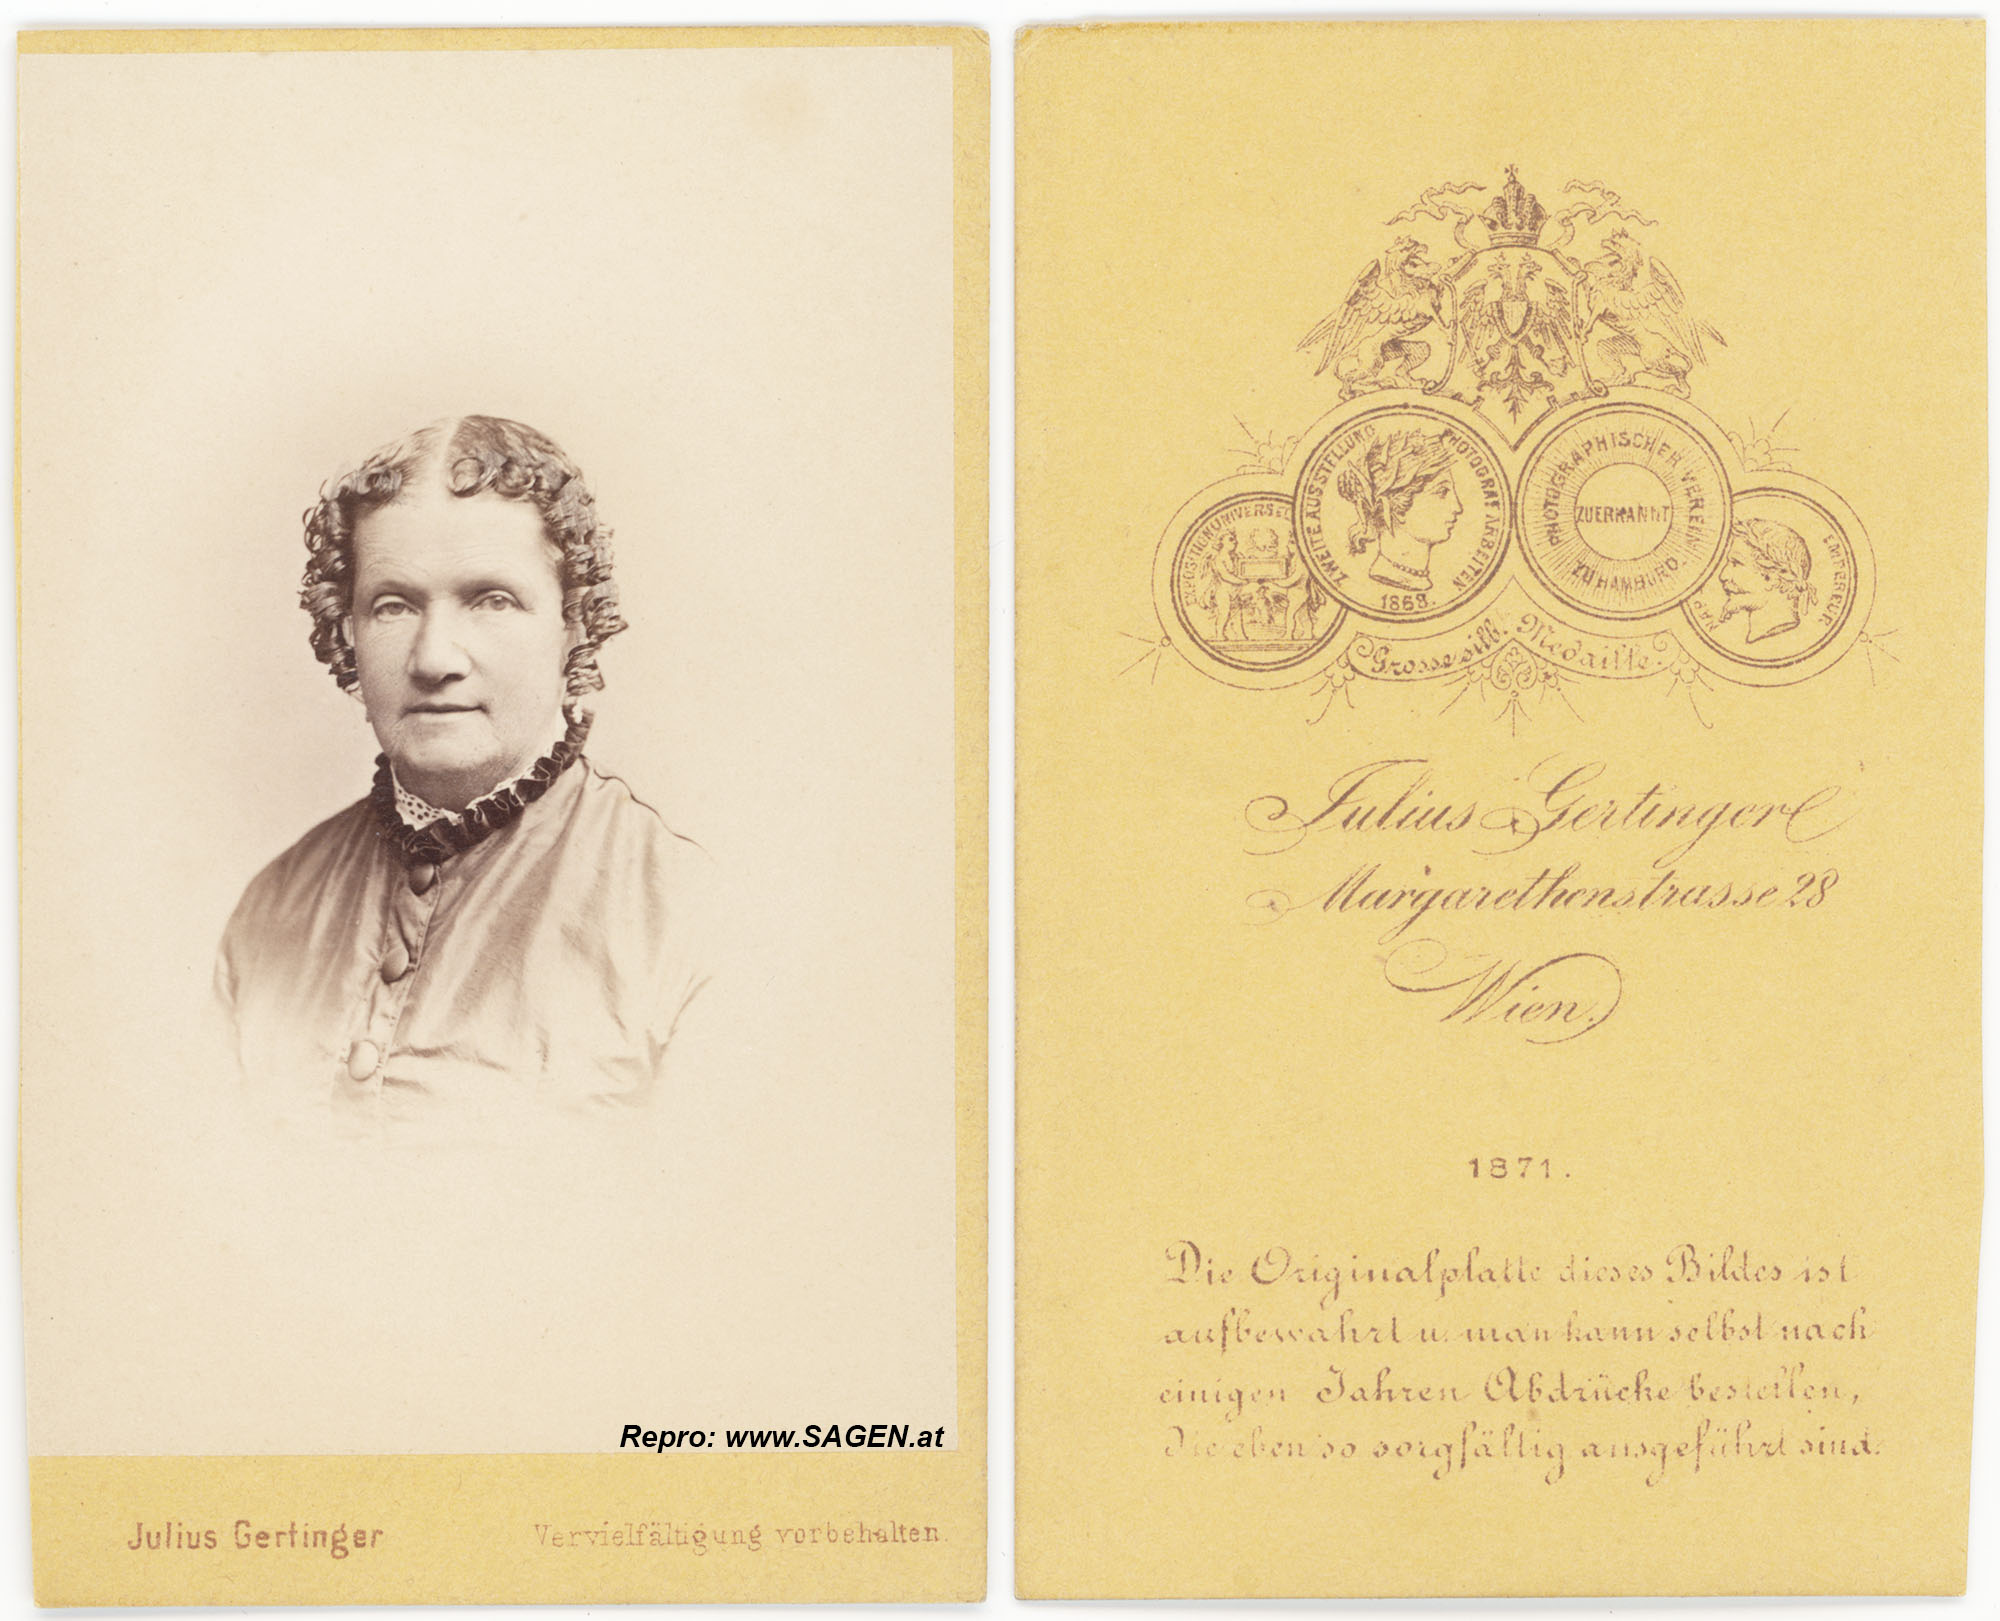 CdV Damenporträt Fotoatelier Julius Gertinger, Wien 1871